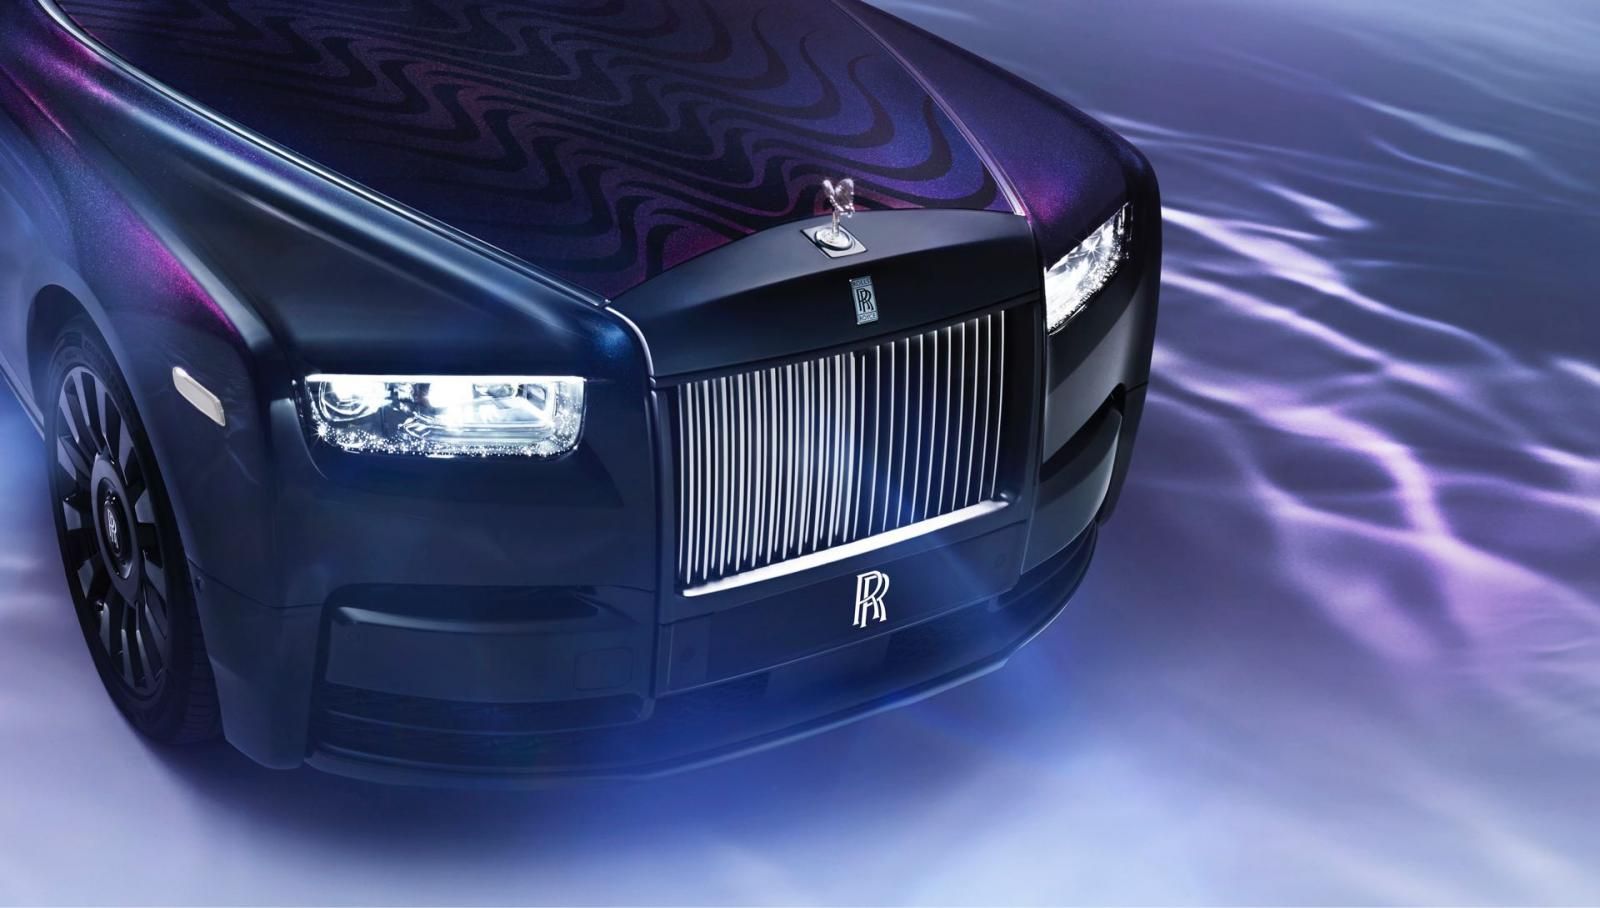 Rolls-Royce Phantom Syntopia by Iris van Herpen